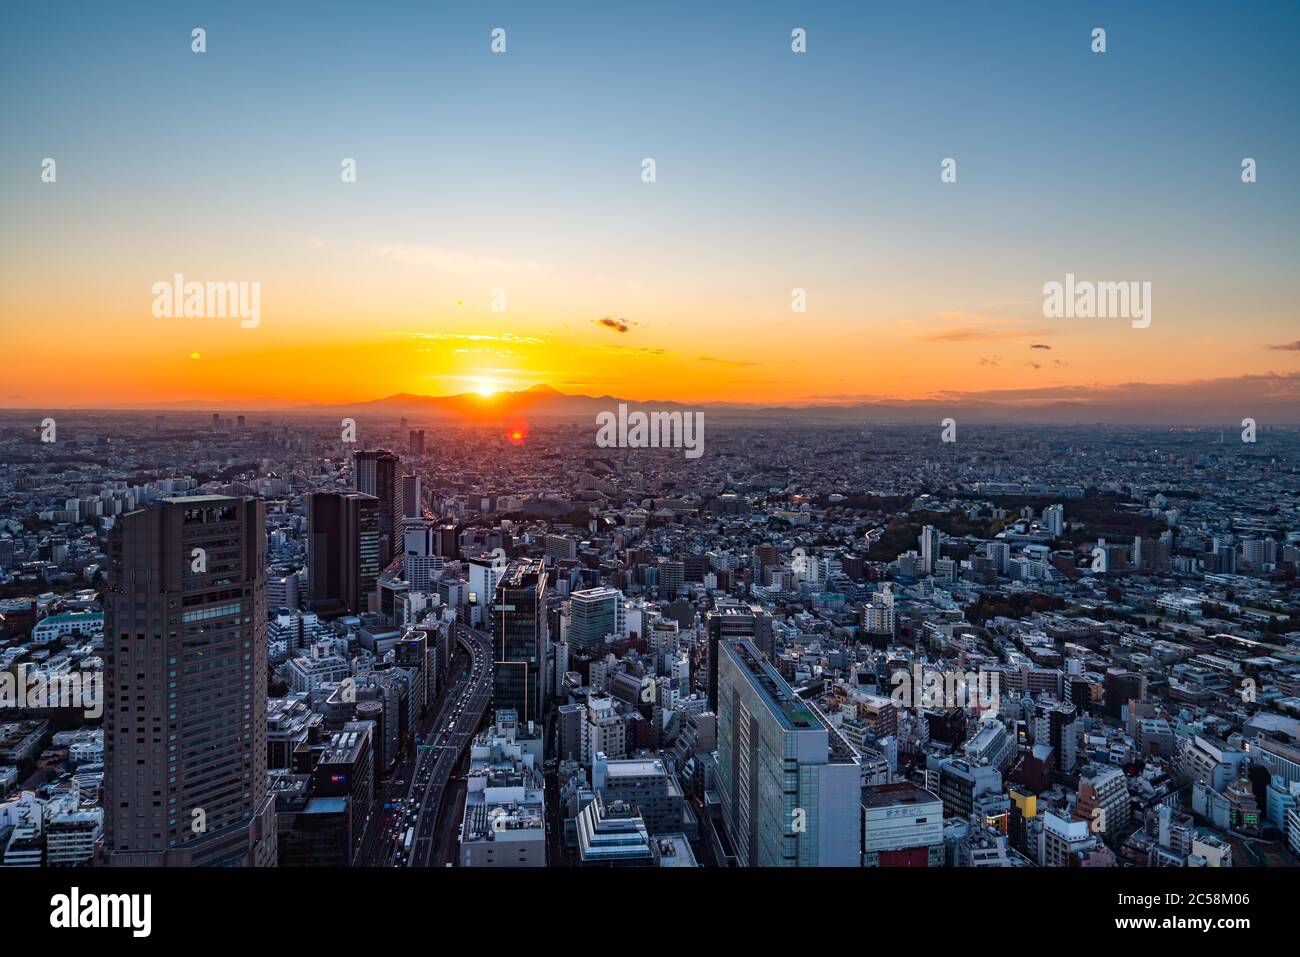 Tokyo, Giappone - 16 novembre 2019: Piazza Shibuya Scramble aperta nel novembre 2019 a Shibuya, Tokyo, Giappone. Il tetto 'Shibuya Sky' può prendere il charg Foto Stock